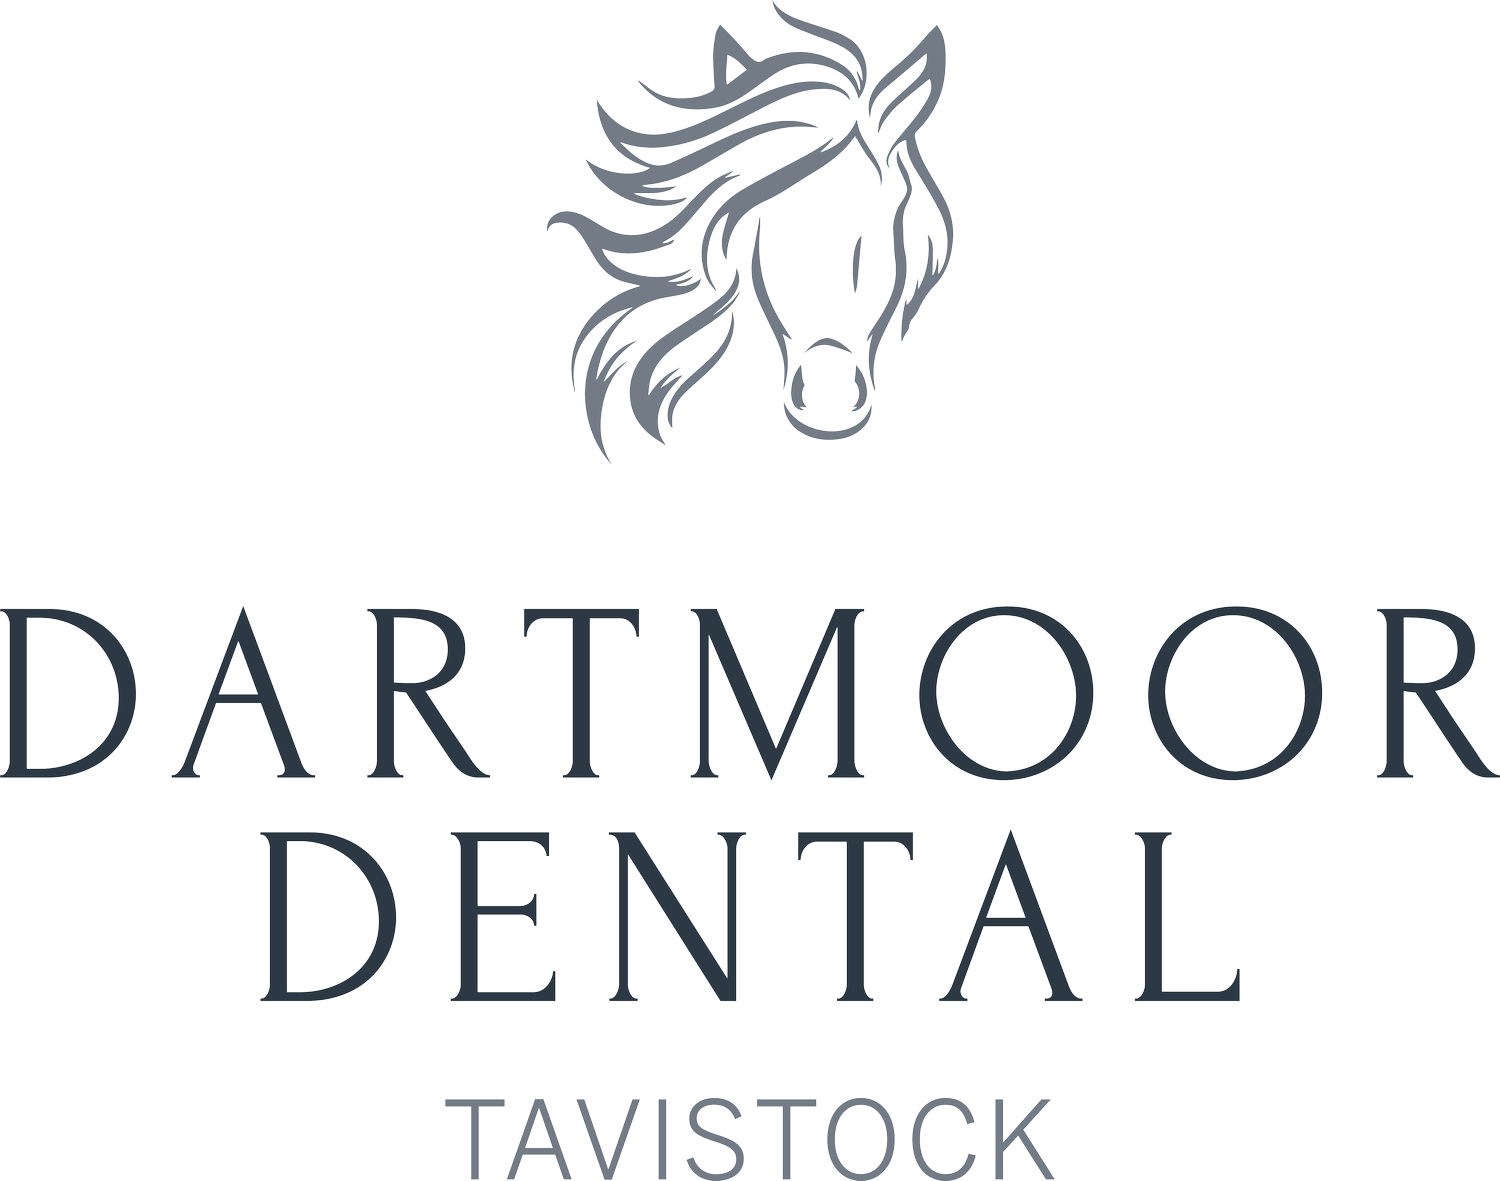 Dartmoor Dental Practice